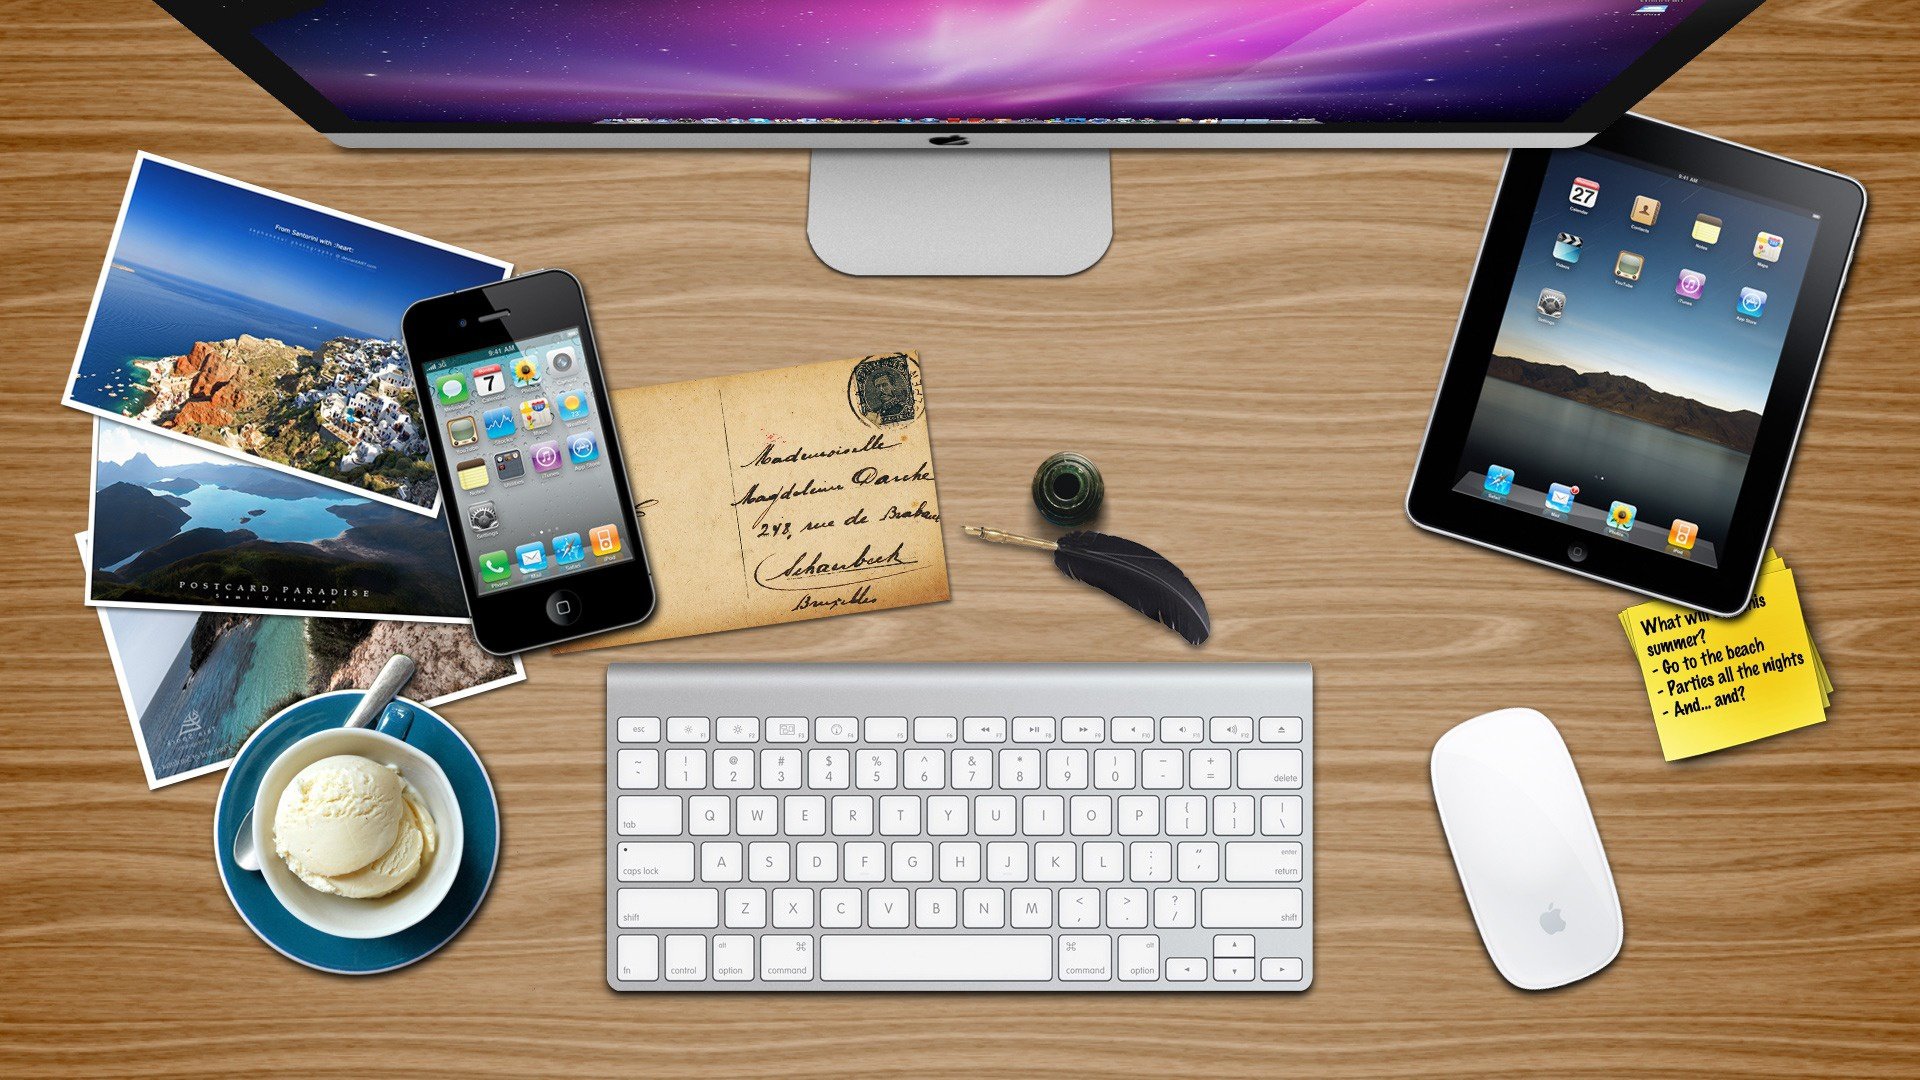 Wallpaper Schreibtisch Fan von Gadgets von Apple Iphone 4 iPad